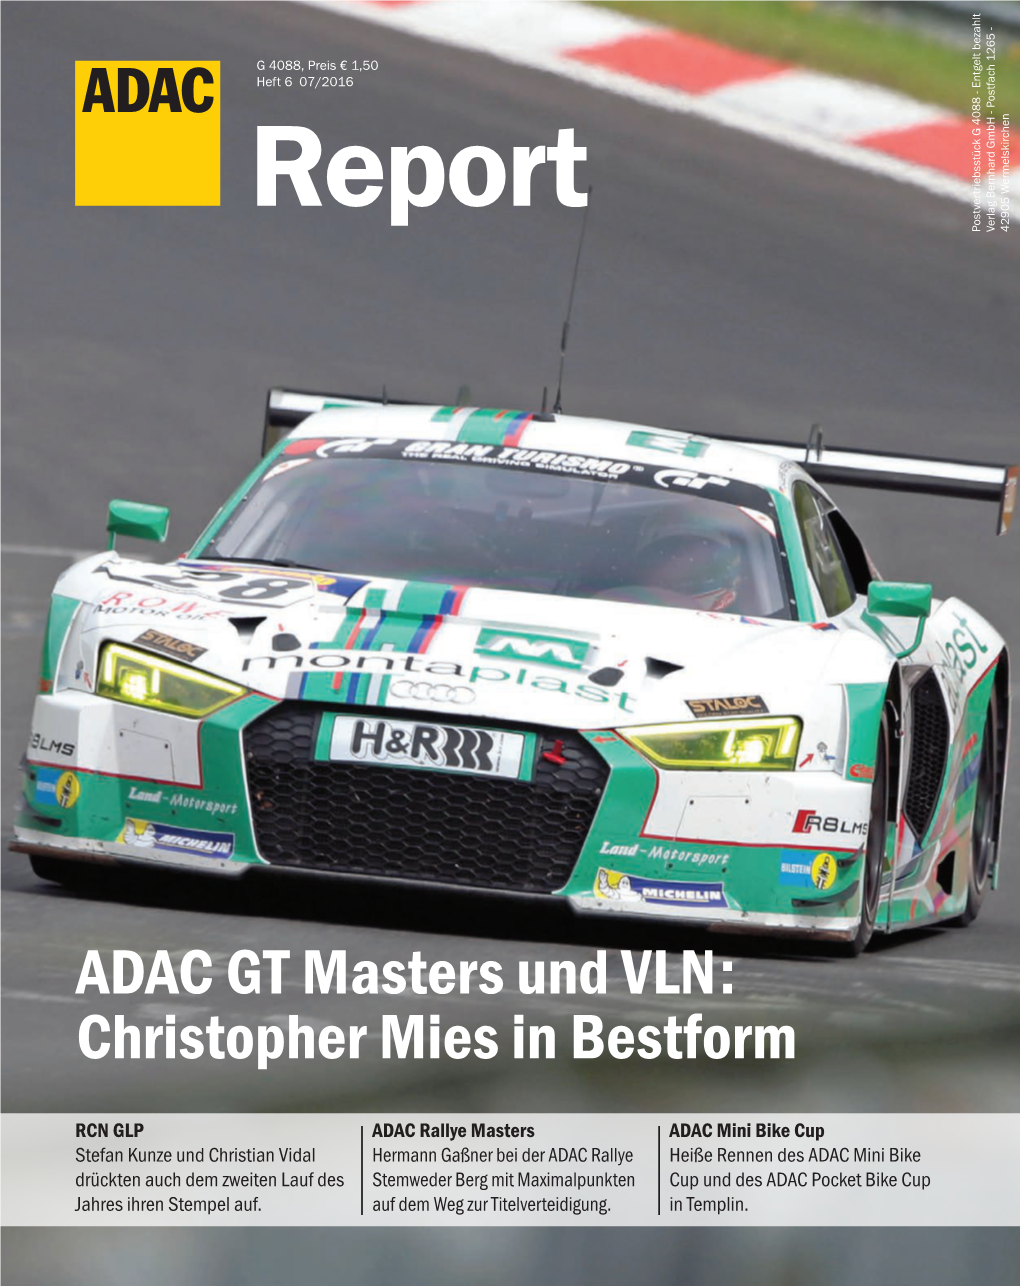 ADAC GT Masters Und VLN: Christopher Mies in Bestform